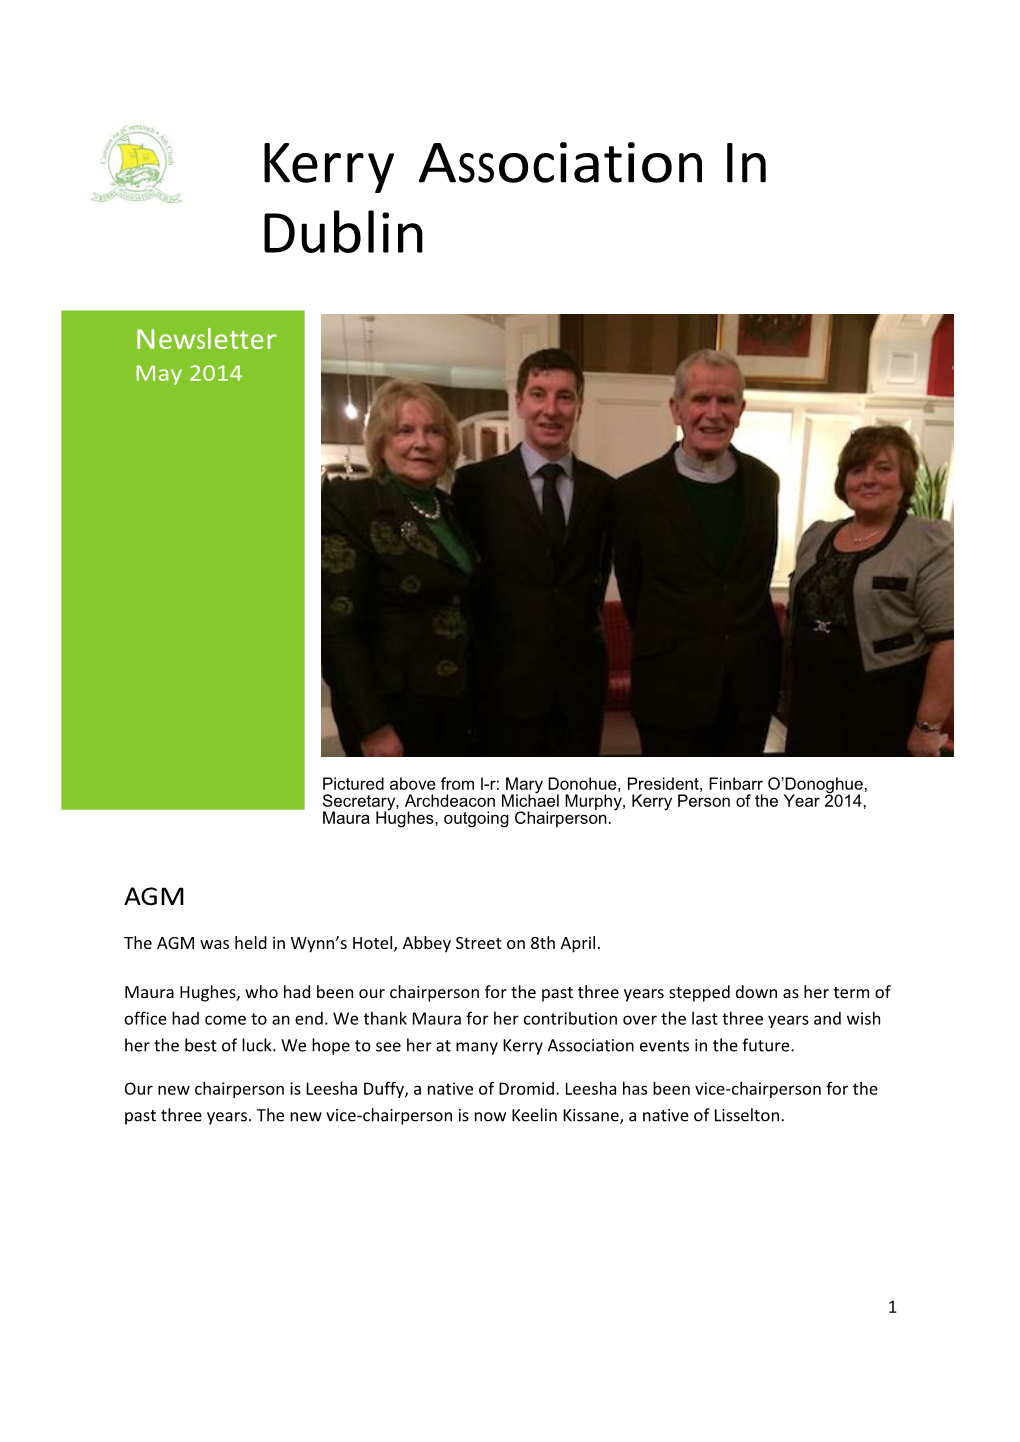 Kerry Association in Dublin